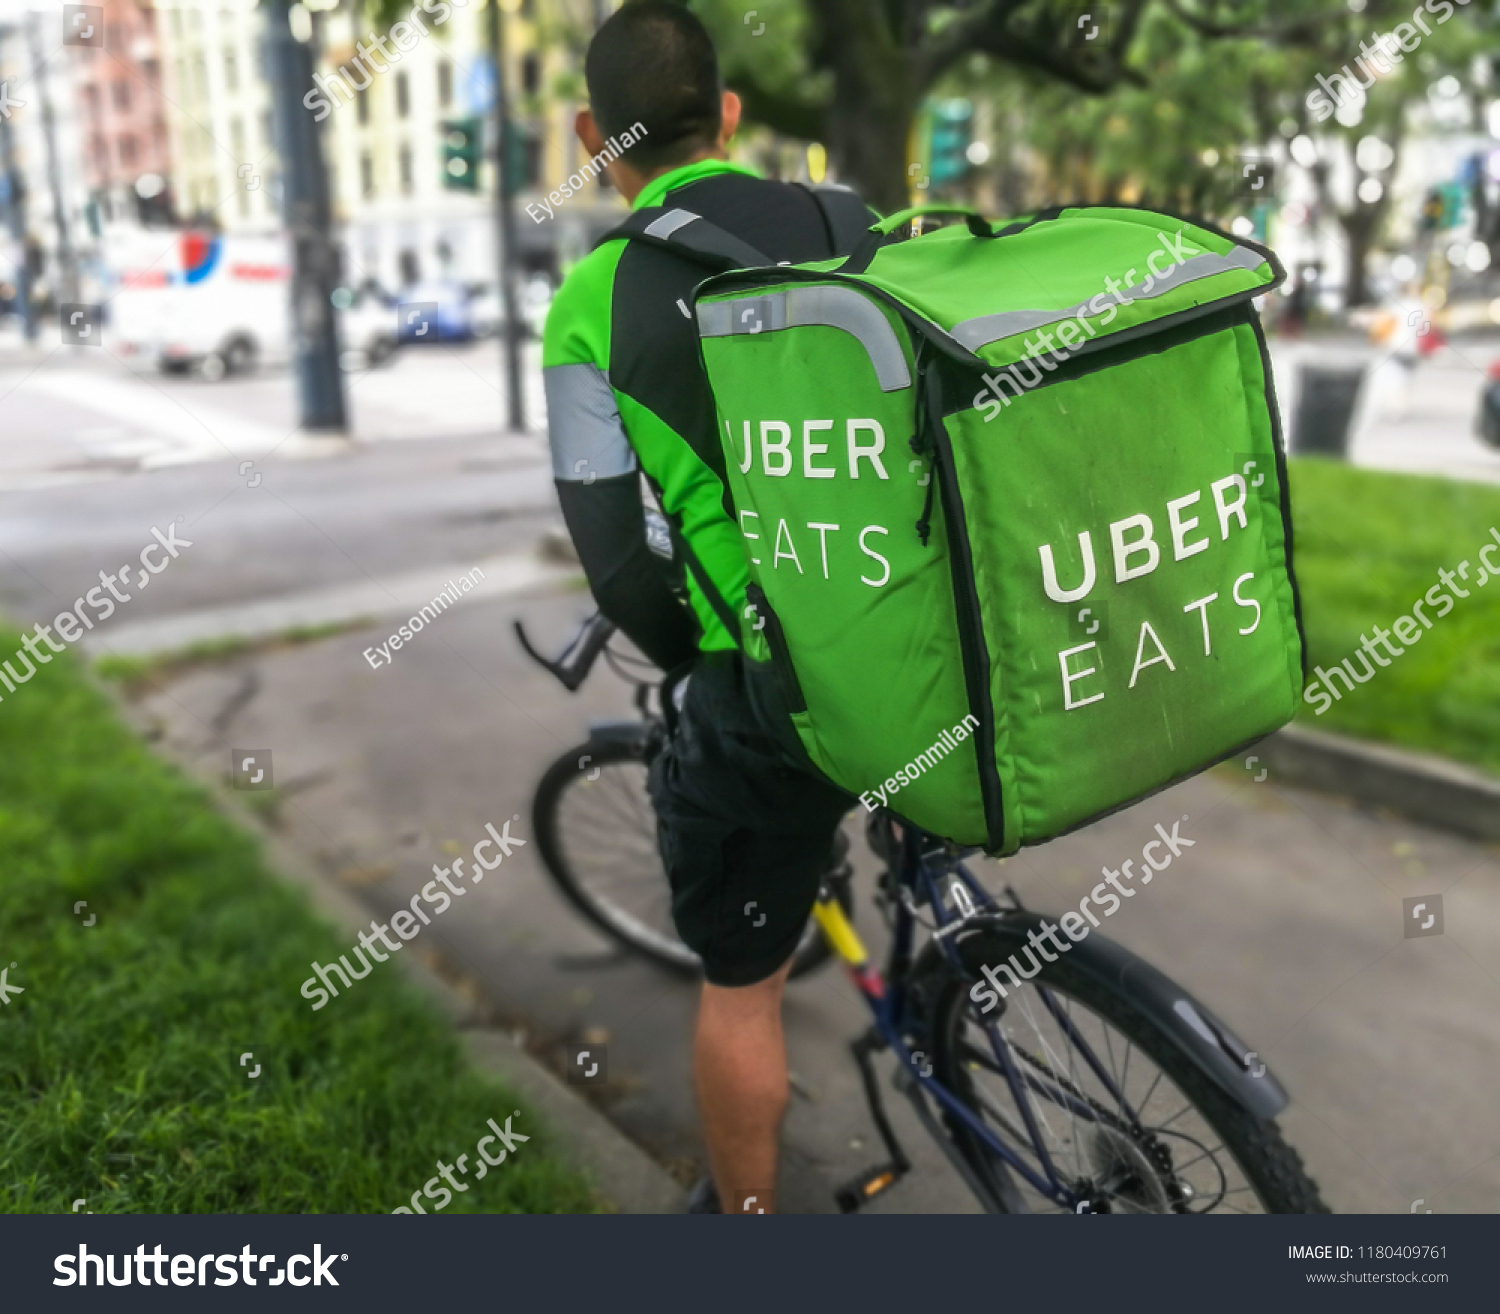 bike uber eats